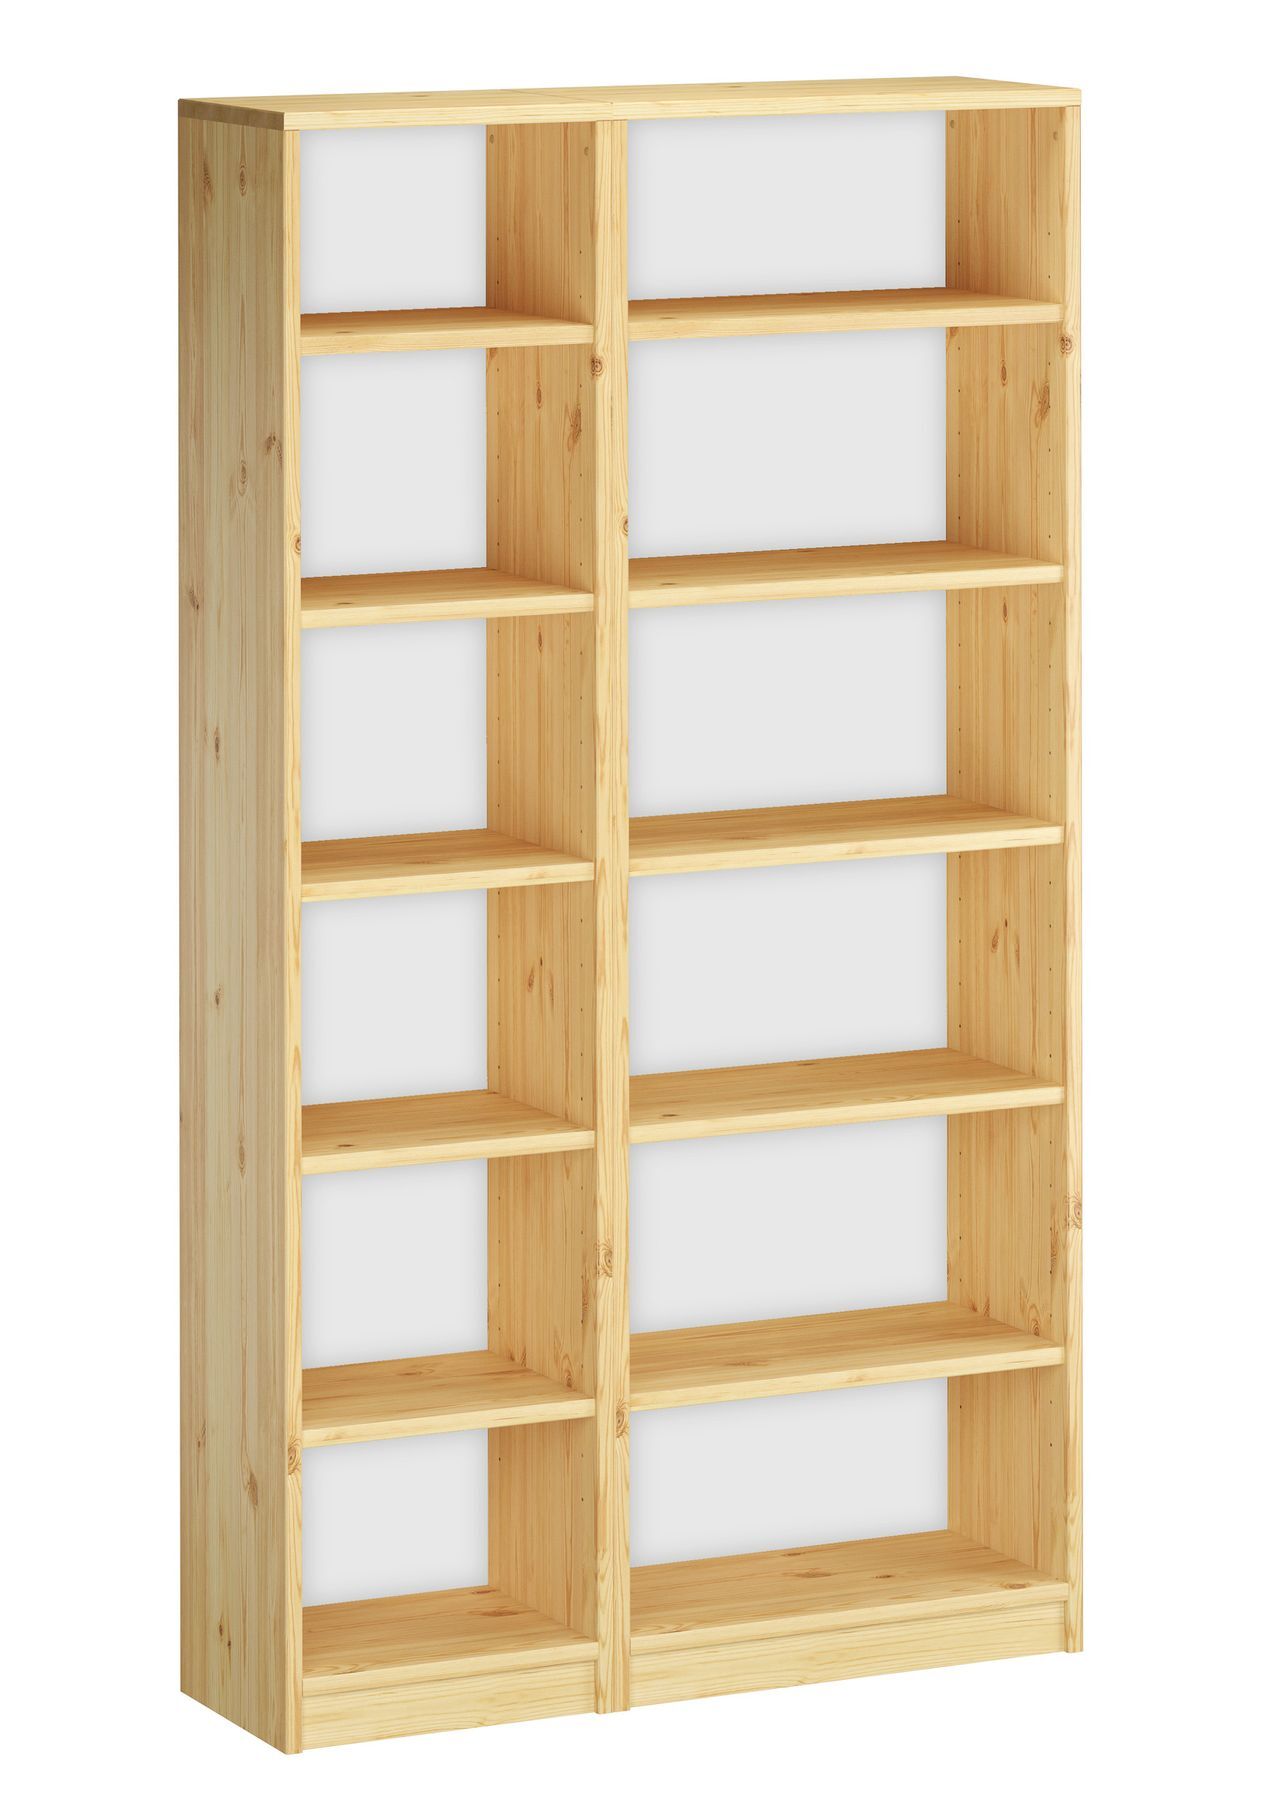 Due varianti di colore x scaffale in legno di Pino massello, bianco o naturale V-90.82-41-18